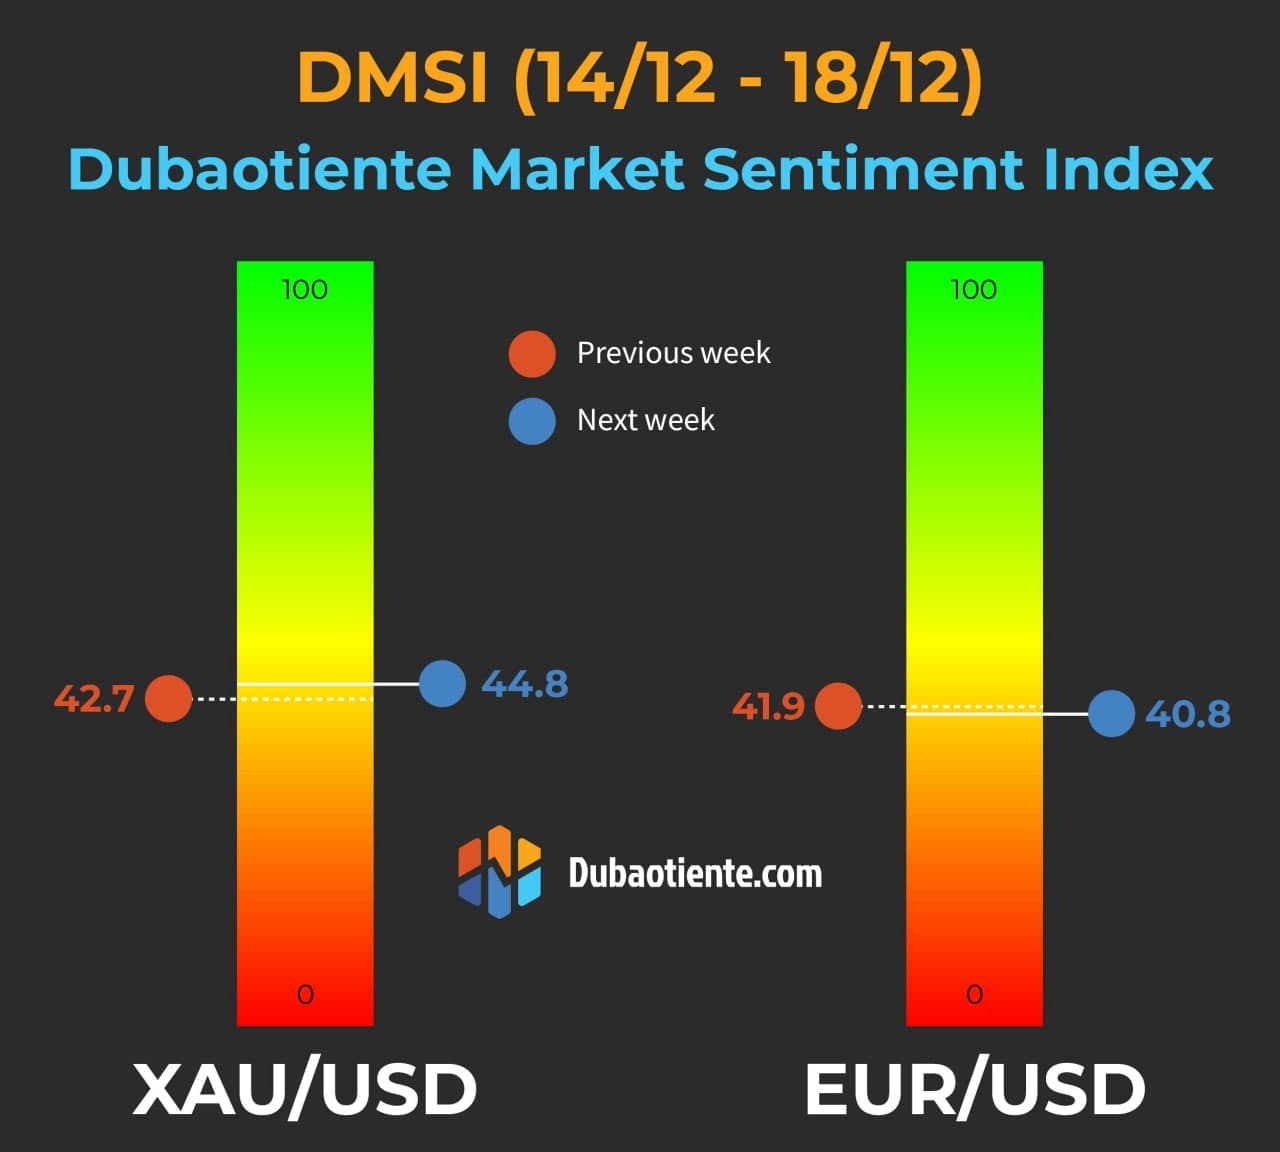 Chỉ số DMSI tuần 14/12-18/12: Kỳ vọng tiếp tục phân hóa giữa XAU/USD và EUR/USD, tuy nhiên kỳ vọng bất ngờ nhẹ hơn